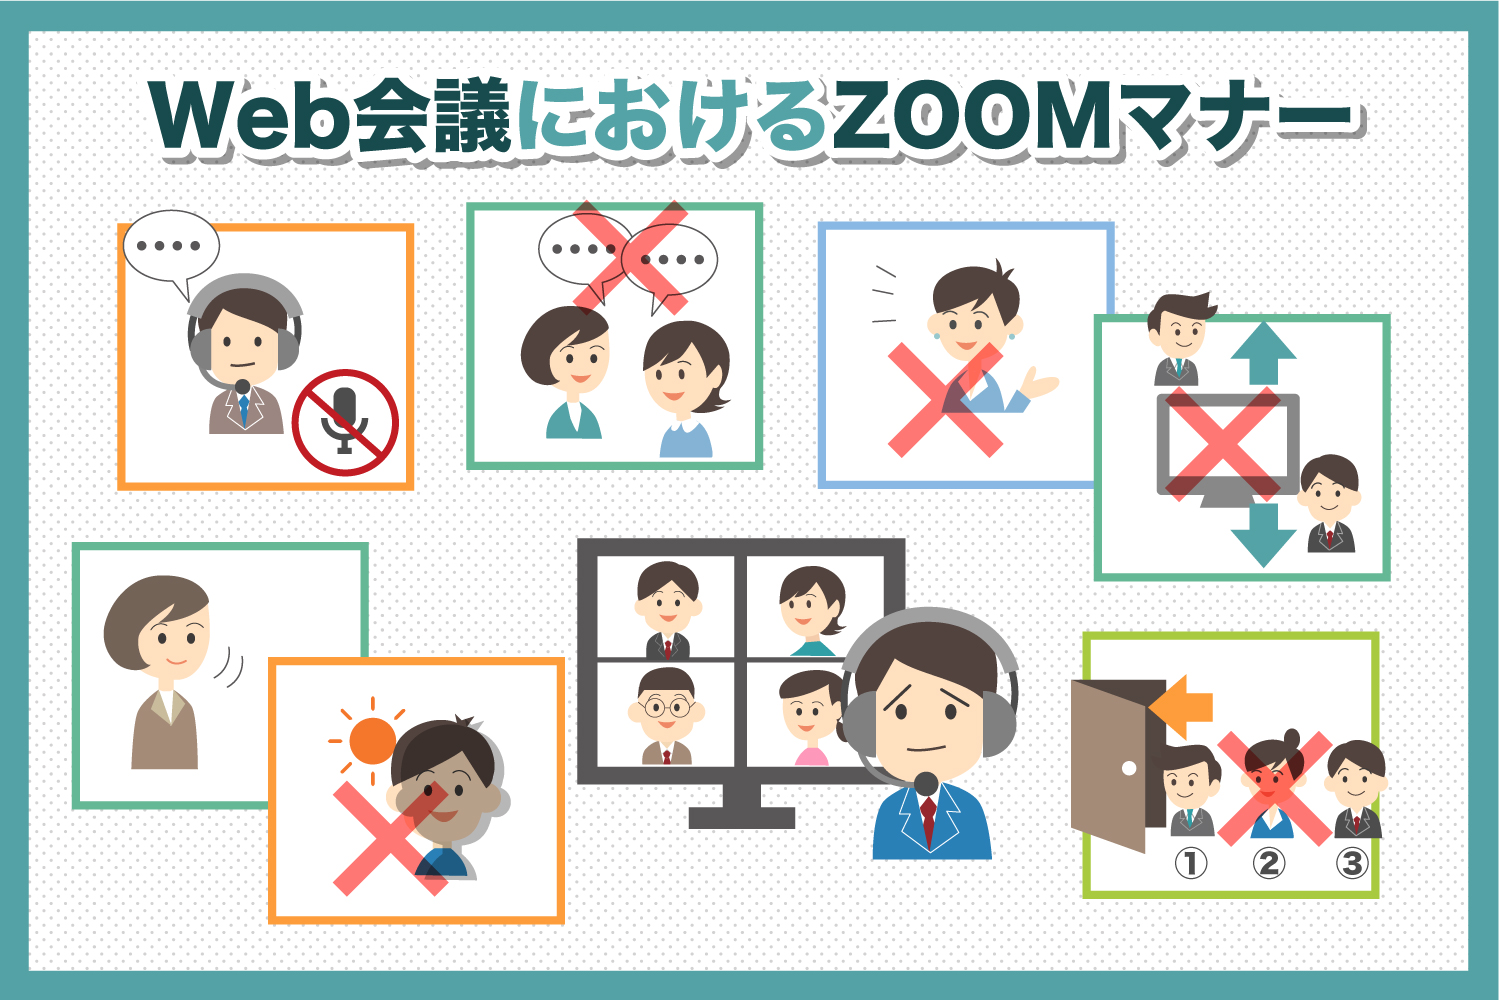 Web会議における「Zoomマナー」とは？SNSやネットで話題の新常識